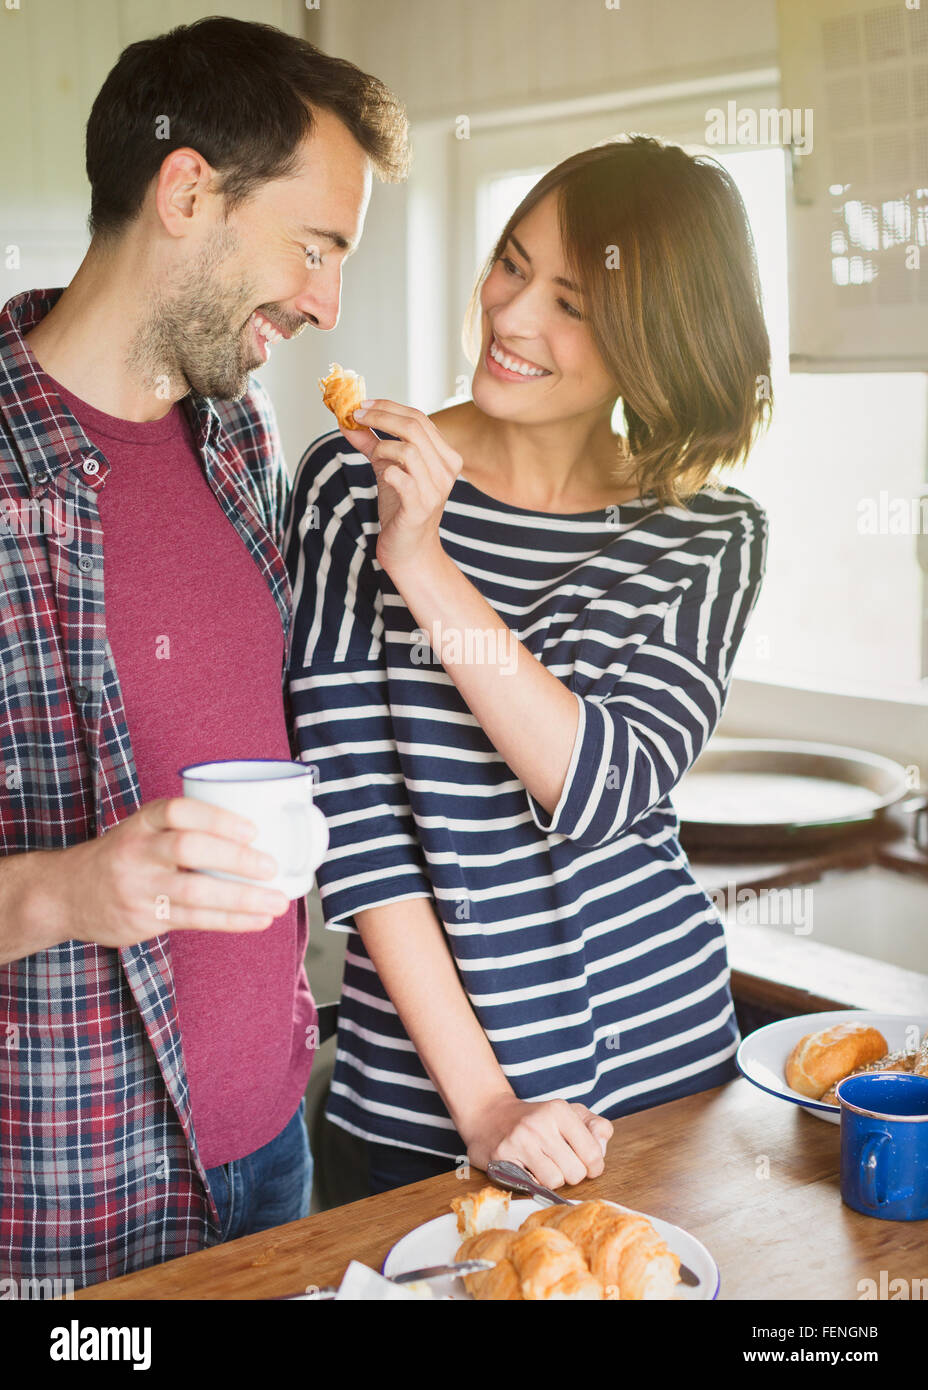 Girlfriend feeding boyfriend croissant in kitchen Stock Photo